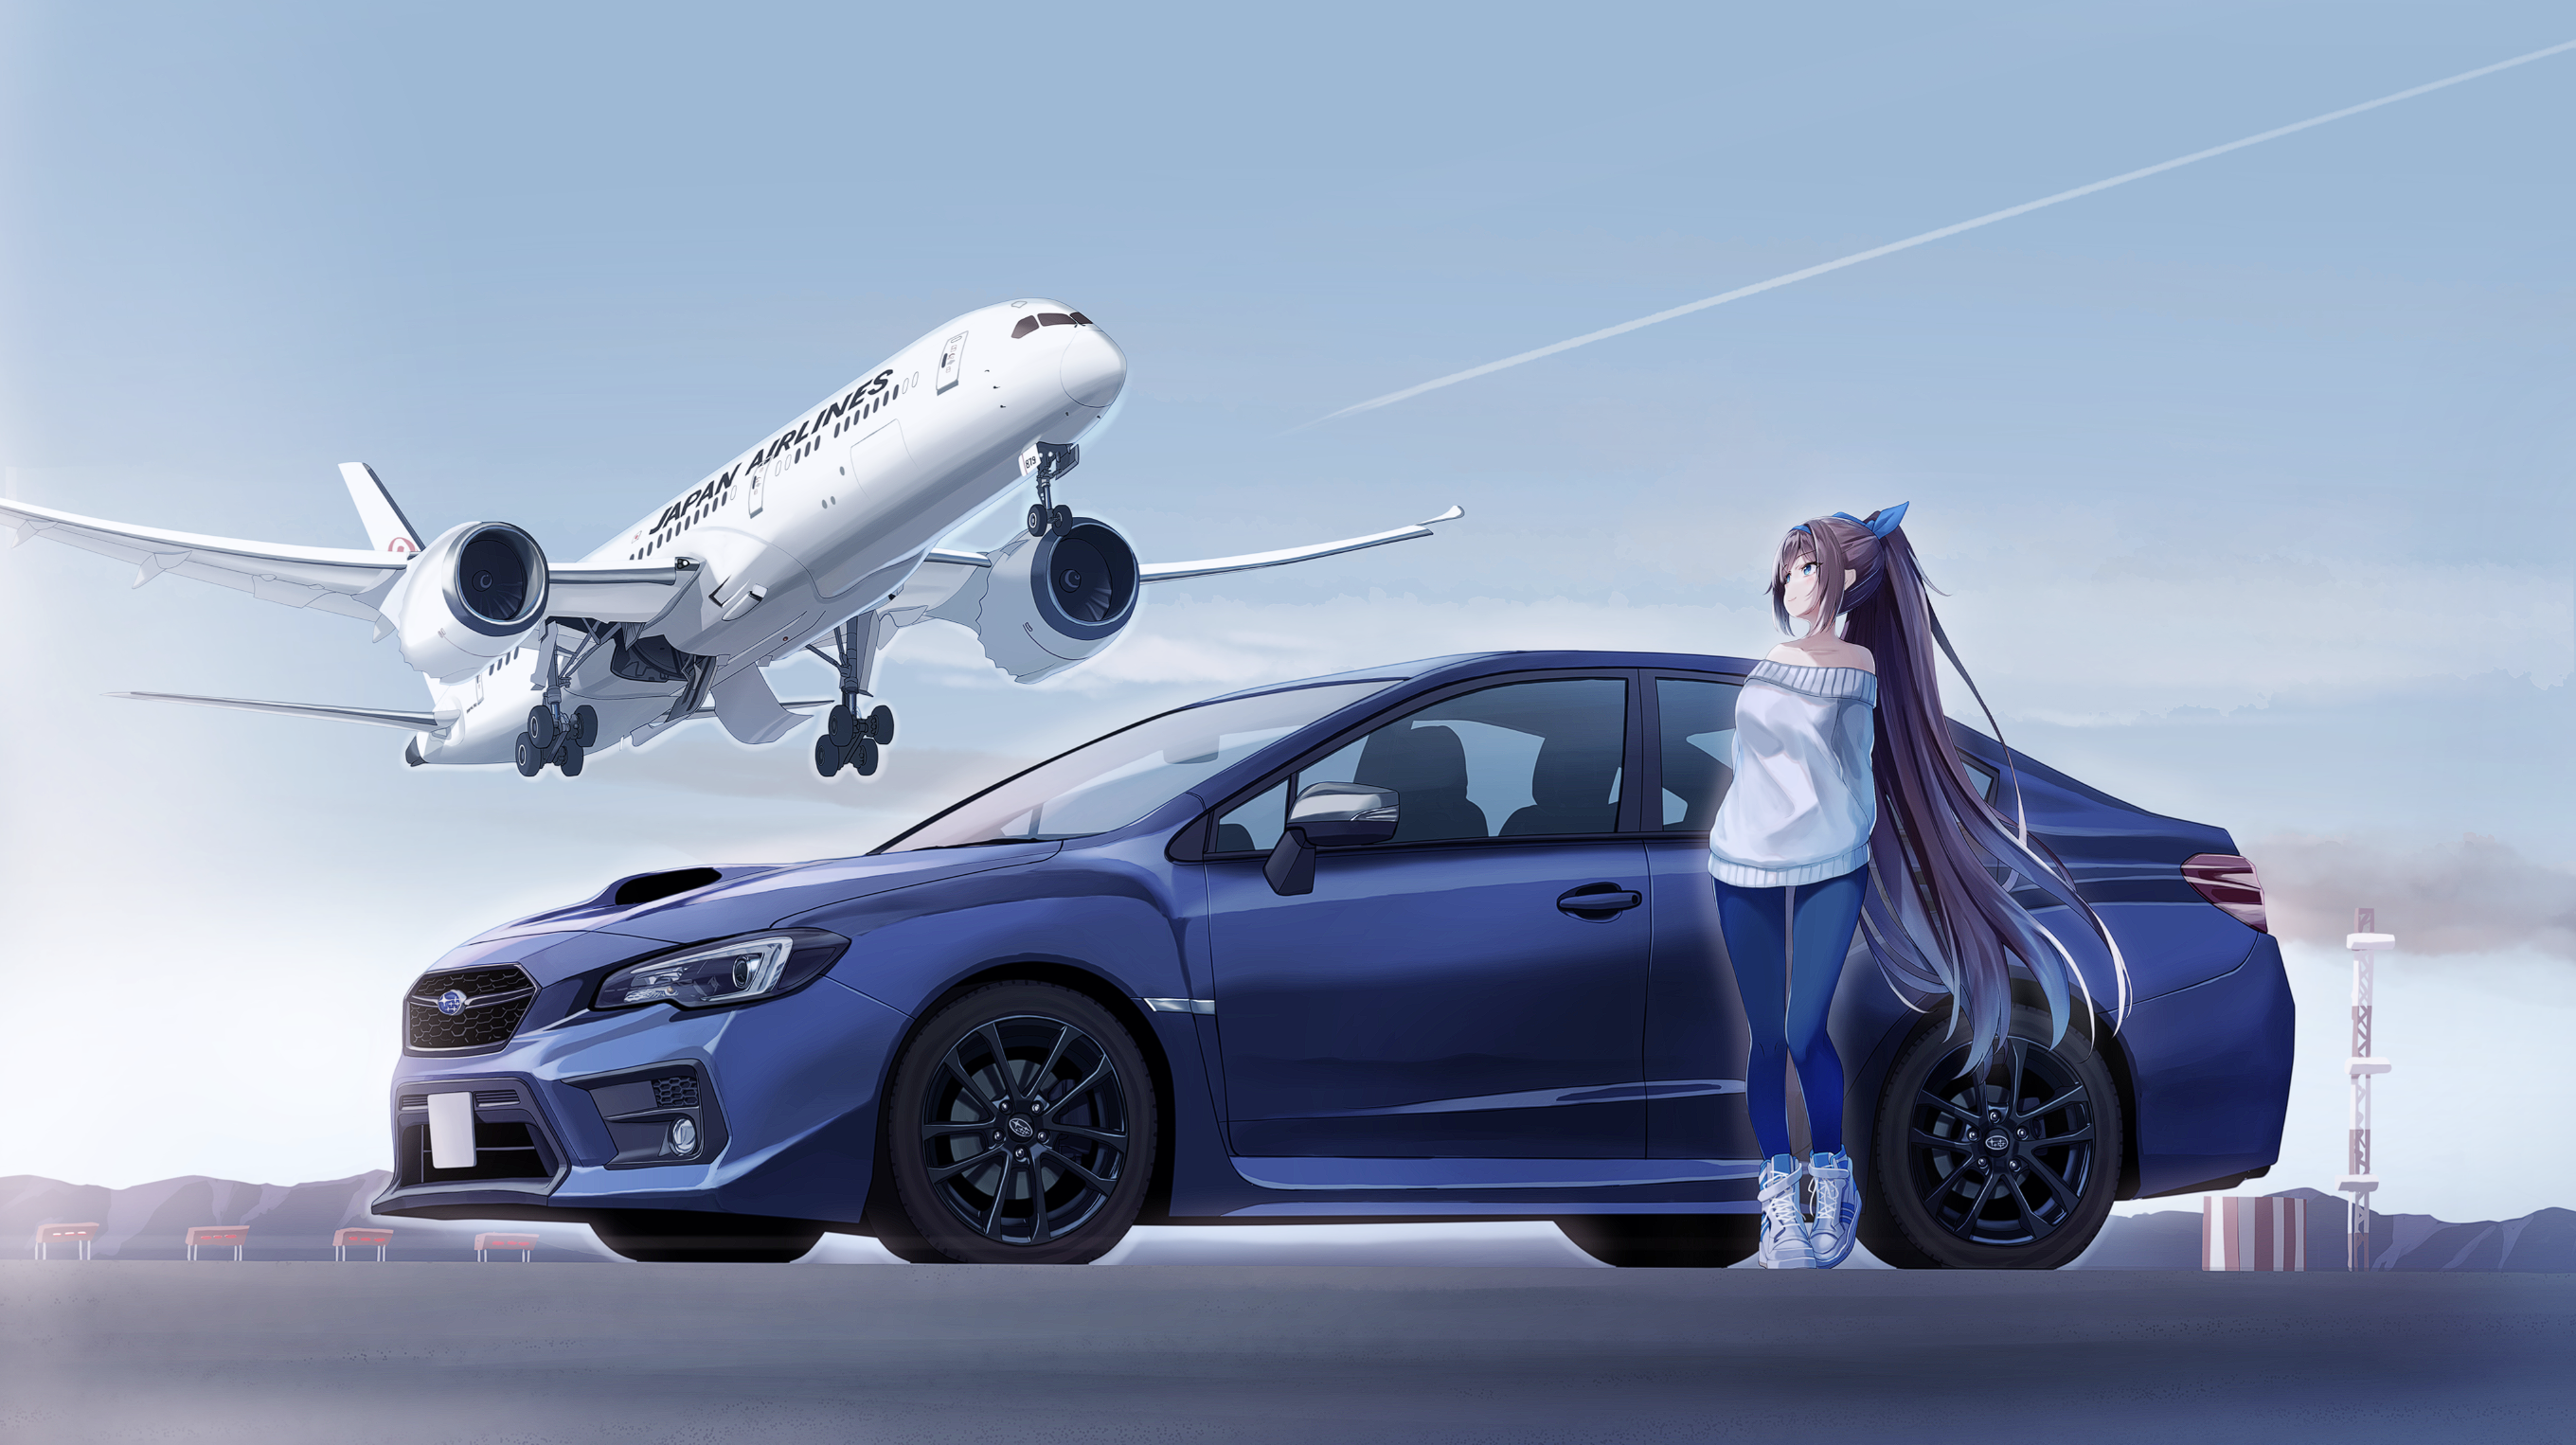 Anime 2720x1526 anime anime girls airplane aircraft Subaru japan Airlines blue cars Subaru WRX STI S208